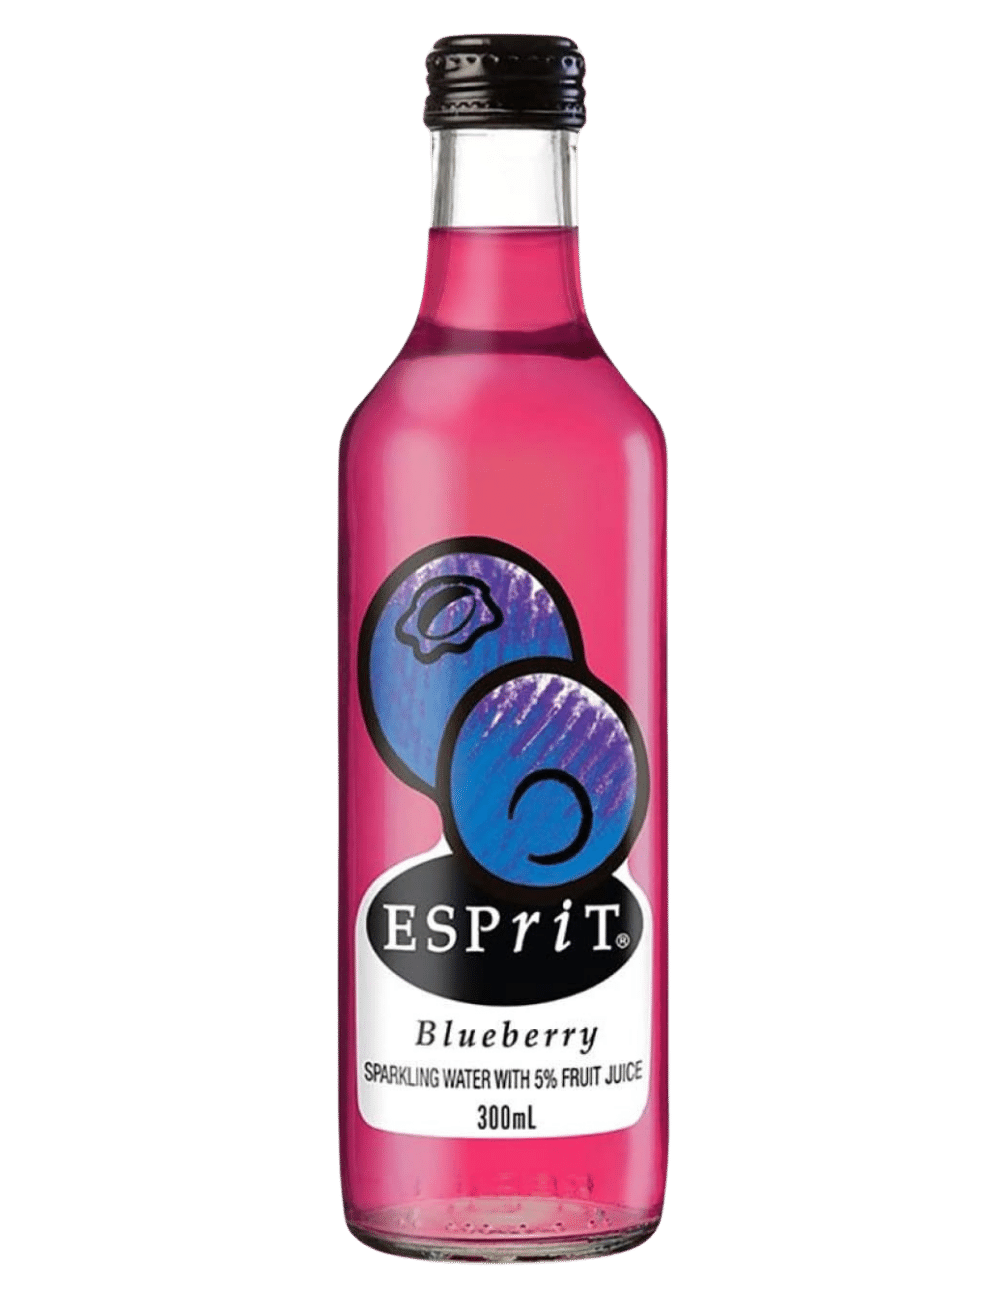 Esprit Blueberry